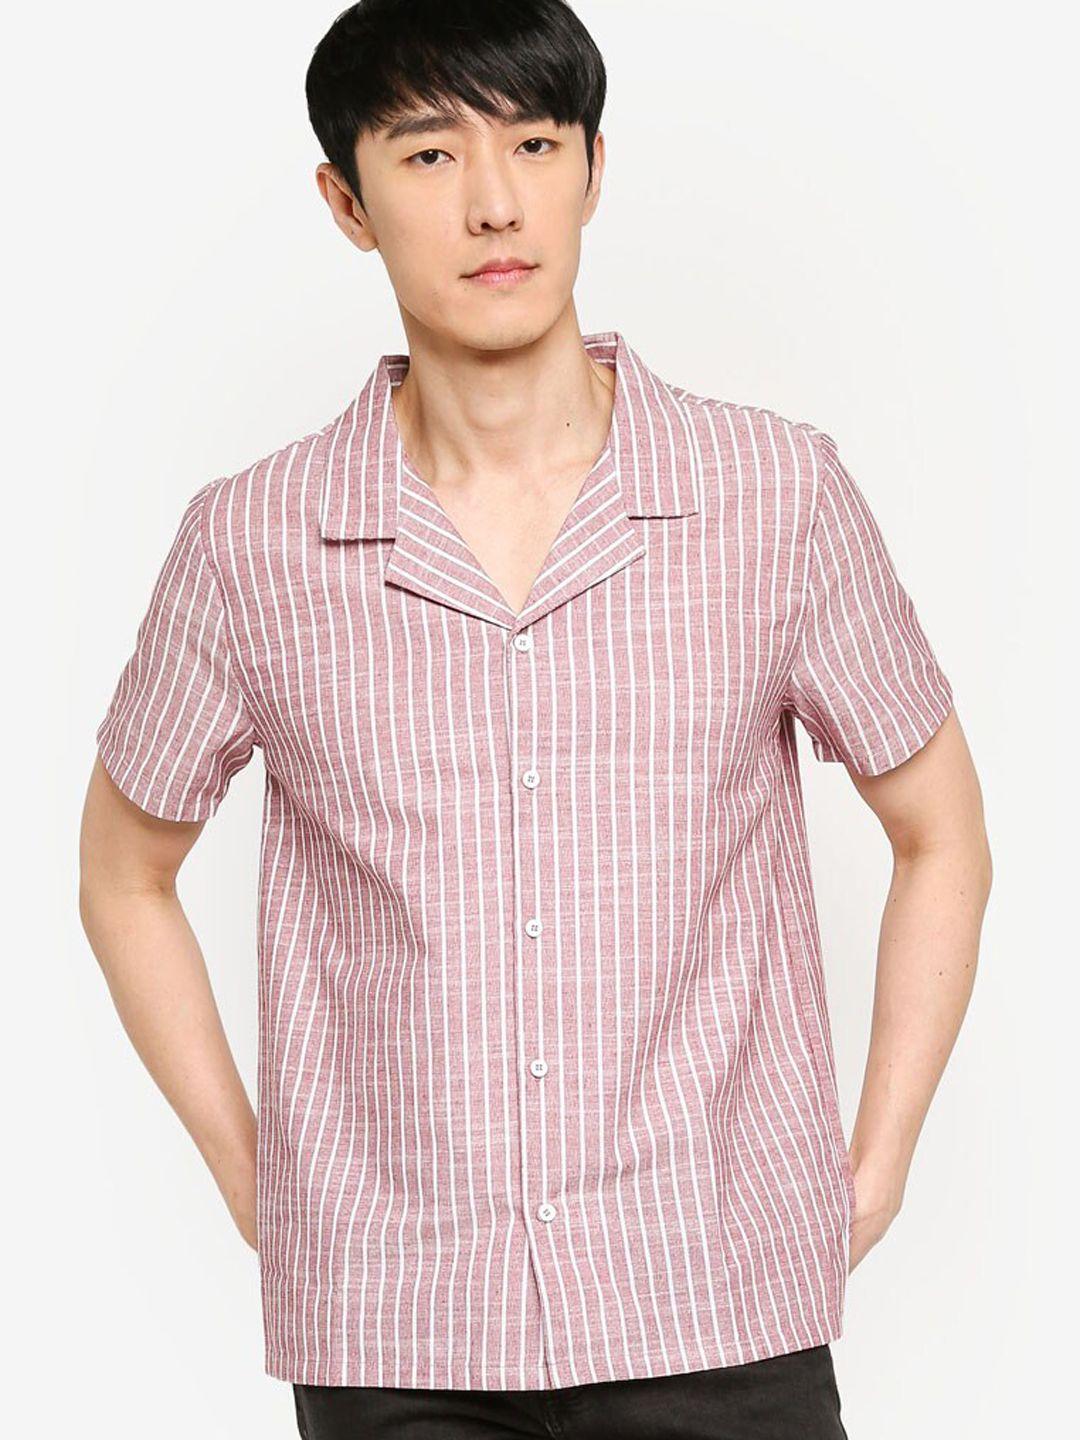 zalora basics men pink striped casual shirt